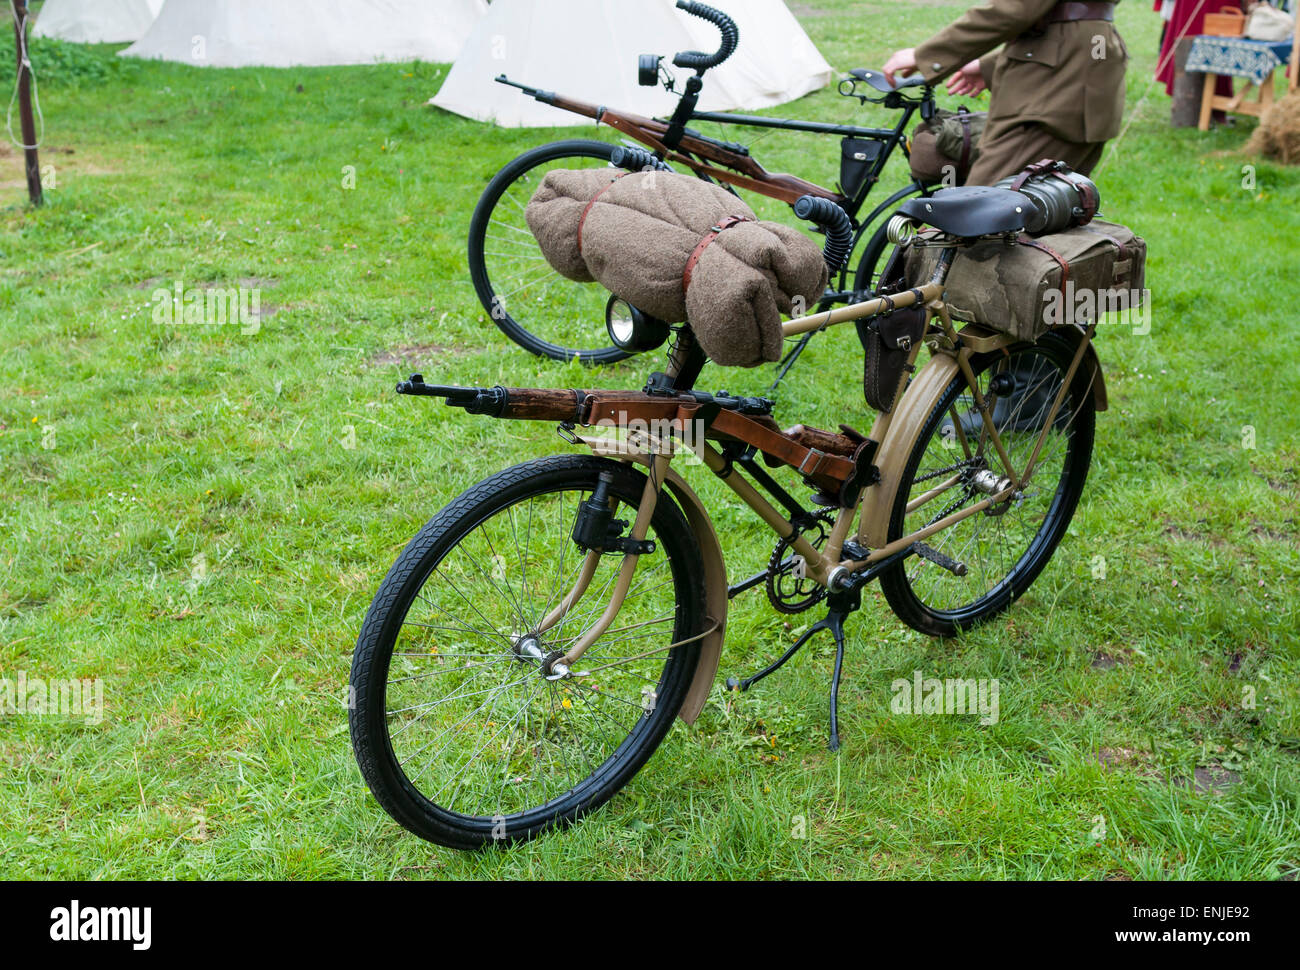 Alte militärische Fahrrad verwendet in der ersten und zweiten Weltkrieg  Stockfotografie - Alamy